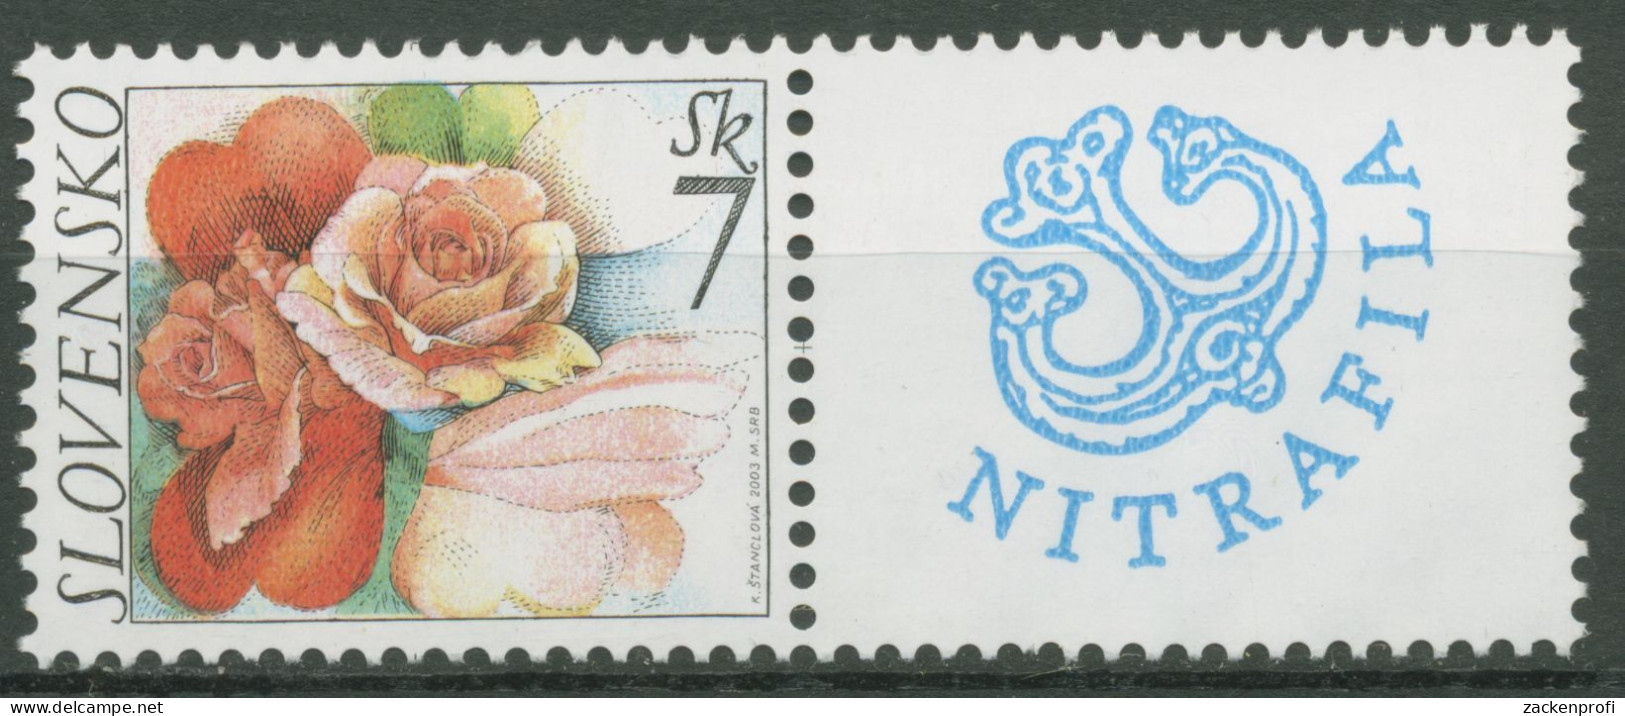 Slowakei 2003 Grußmarke Blumen Rosen 446 Zf Postfrisch - Ongebruikt